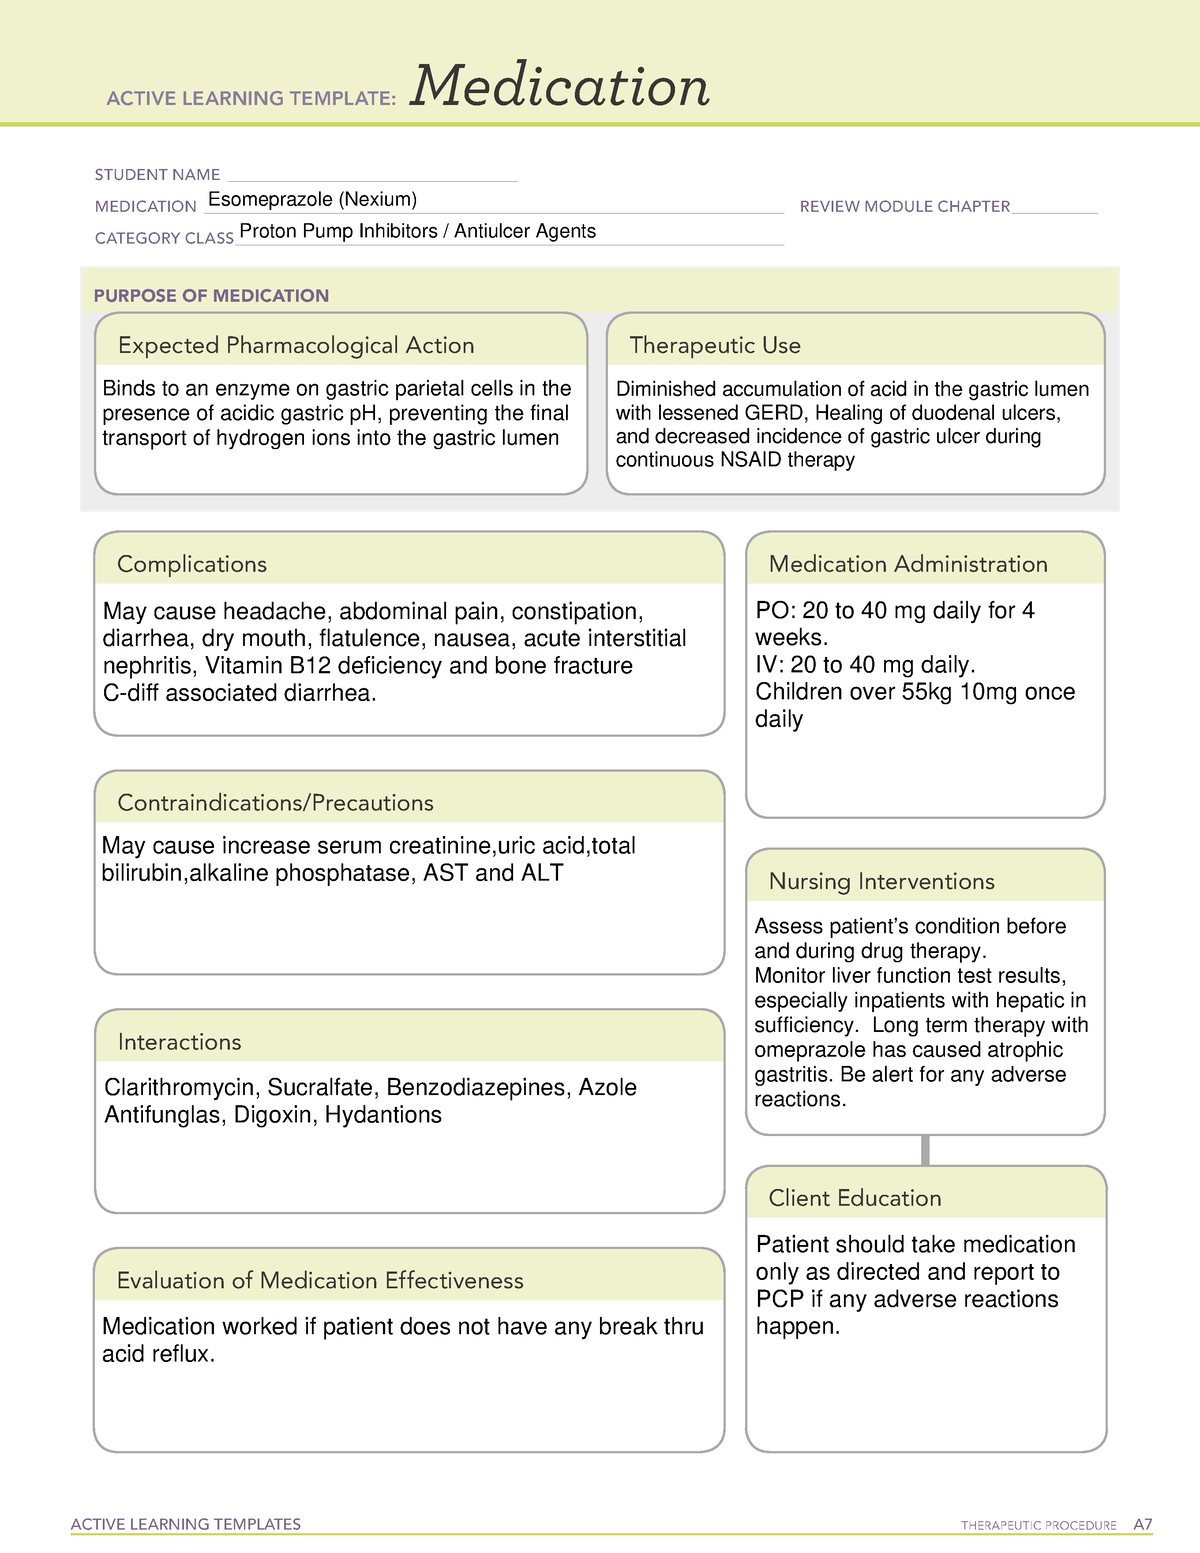 ATI Esomeprazole(Nexium) Medication Sheet ACTIVE LEARNING TEMPLATES